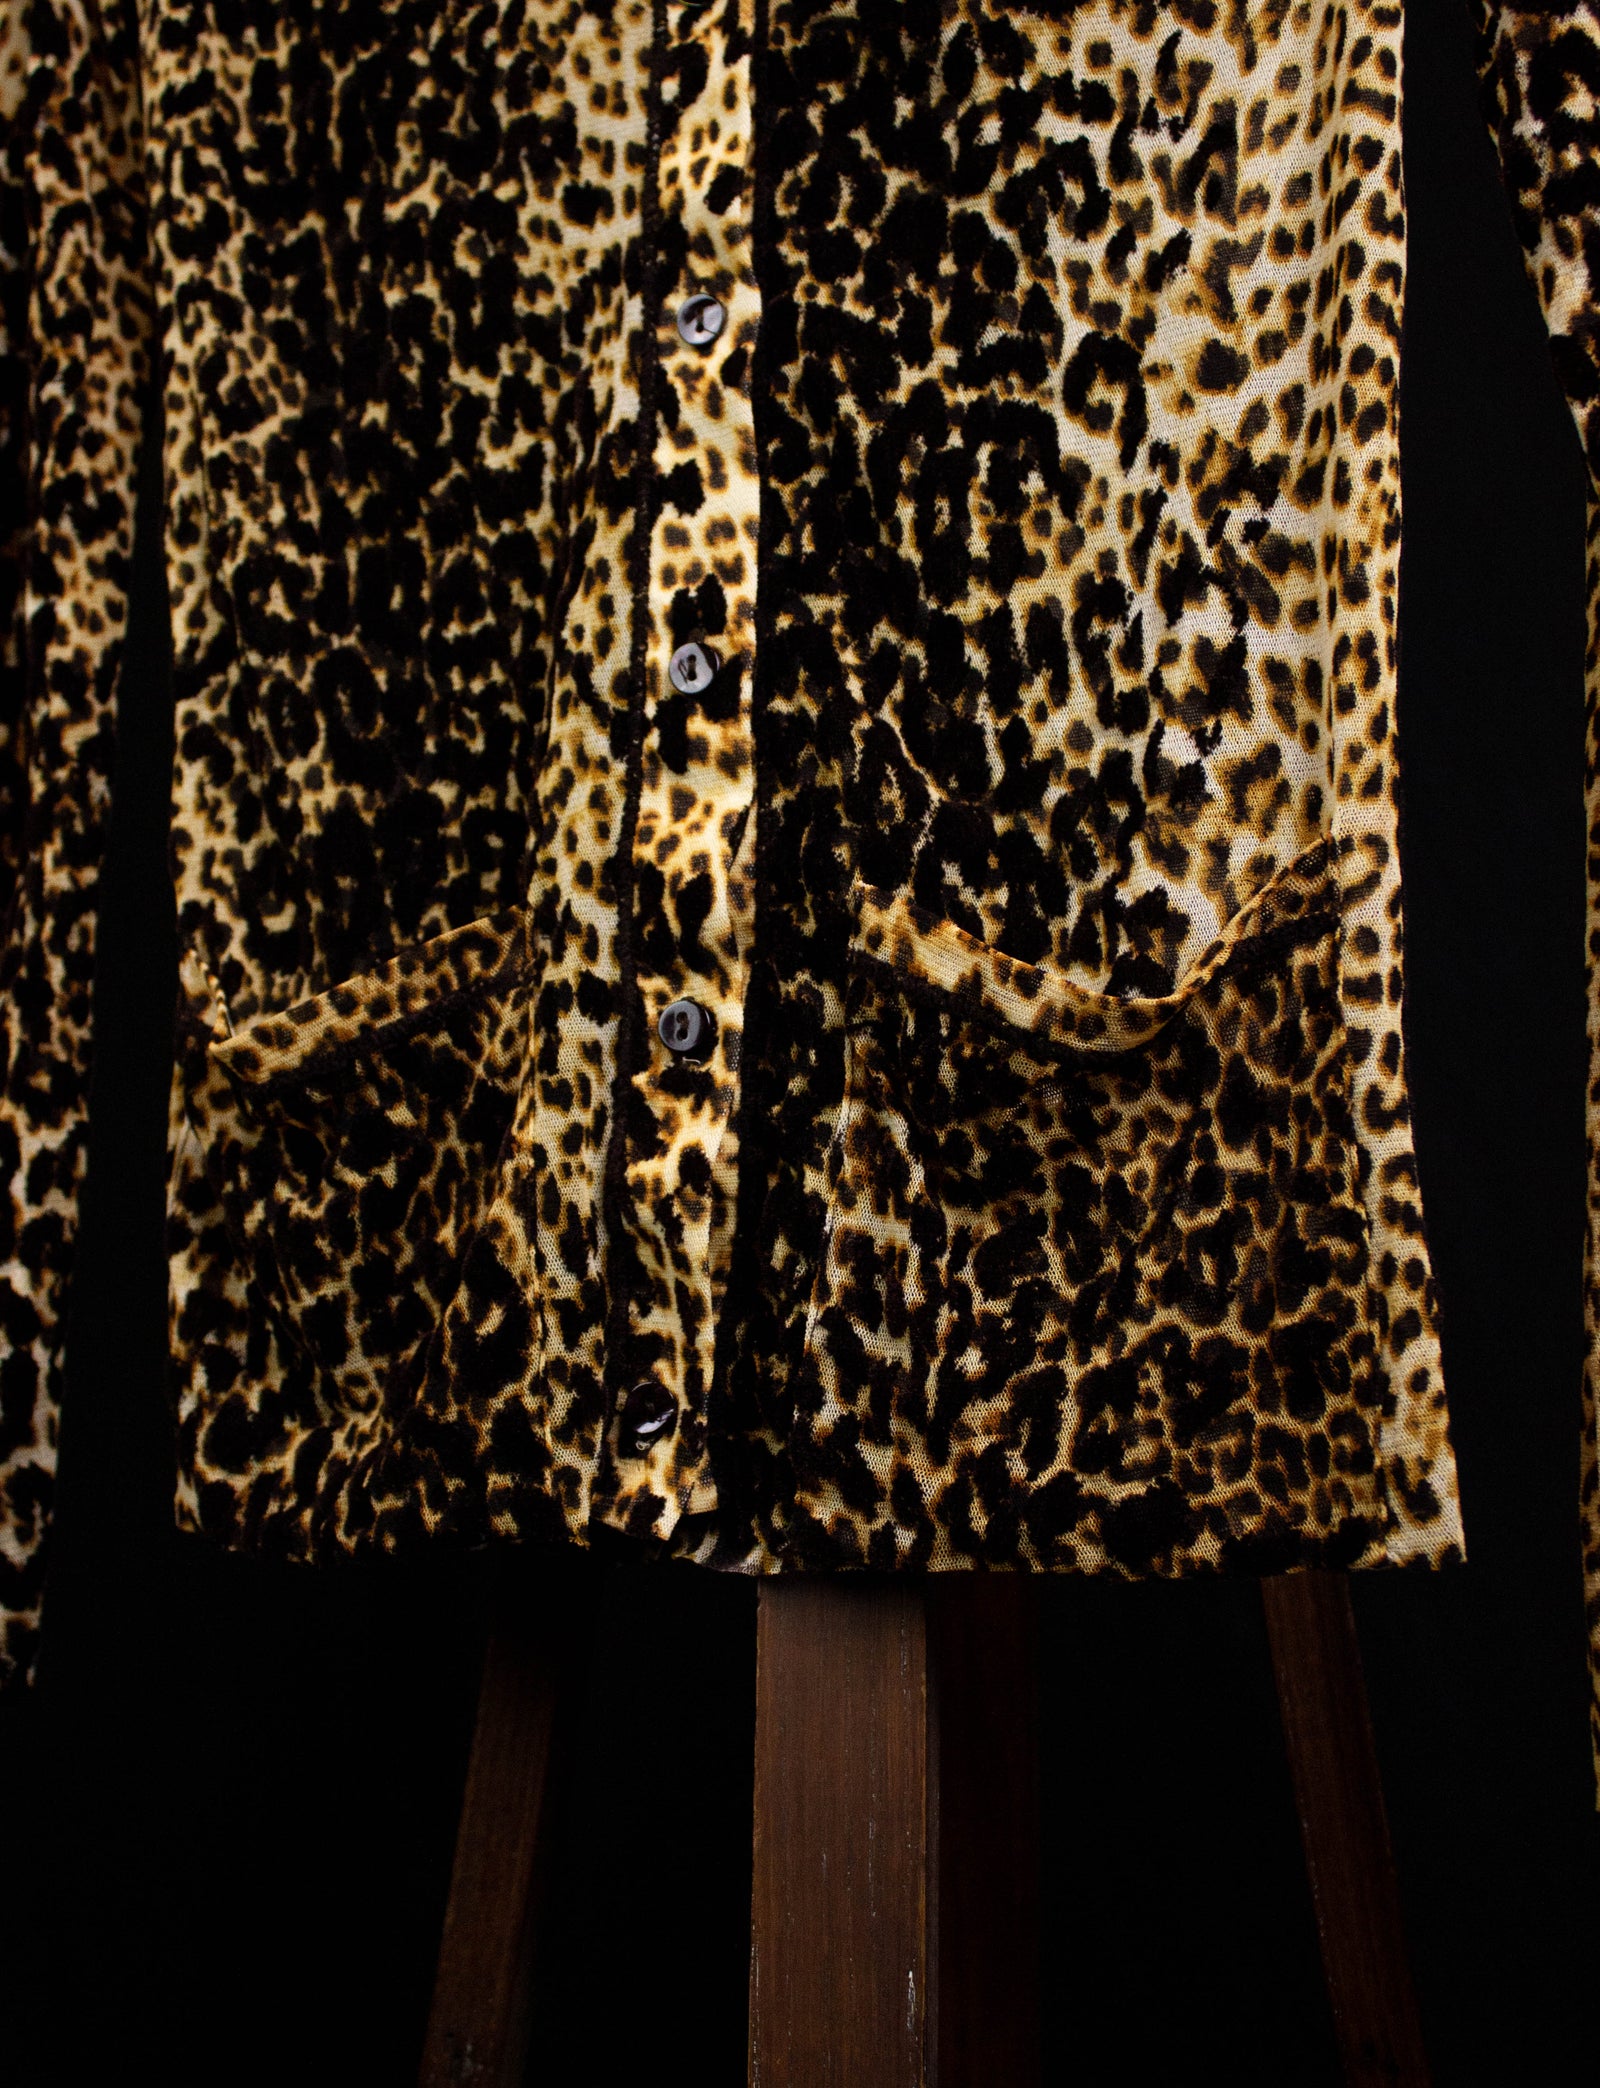 Jean Paul Gaultier Femme Cheetah Top Small